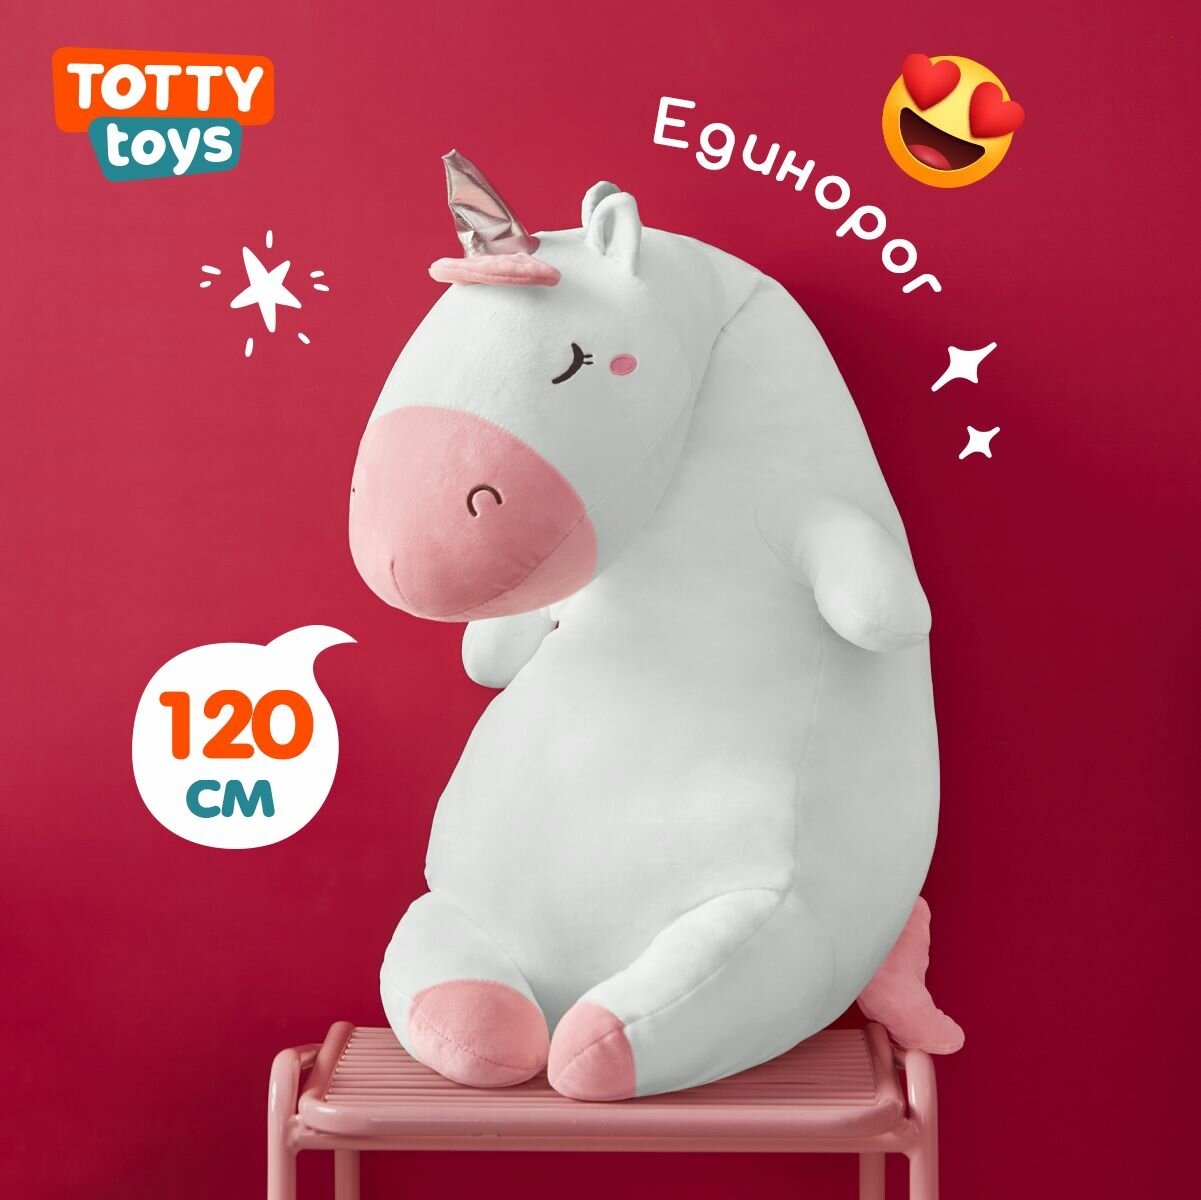 Мягкая игрушка Totty toys единорог-сплюшка белый, 120 см